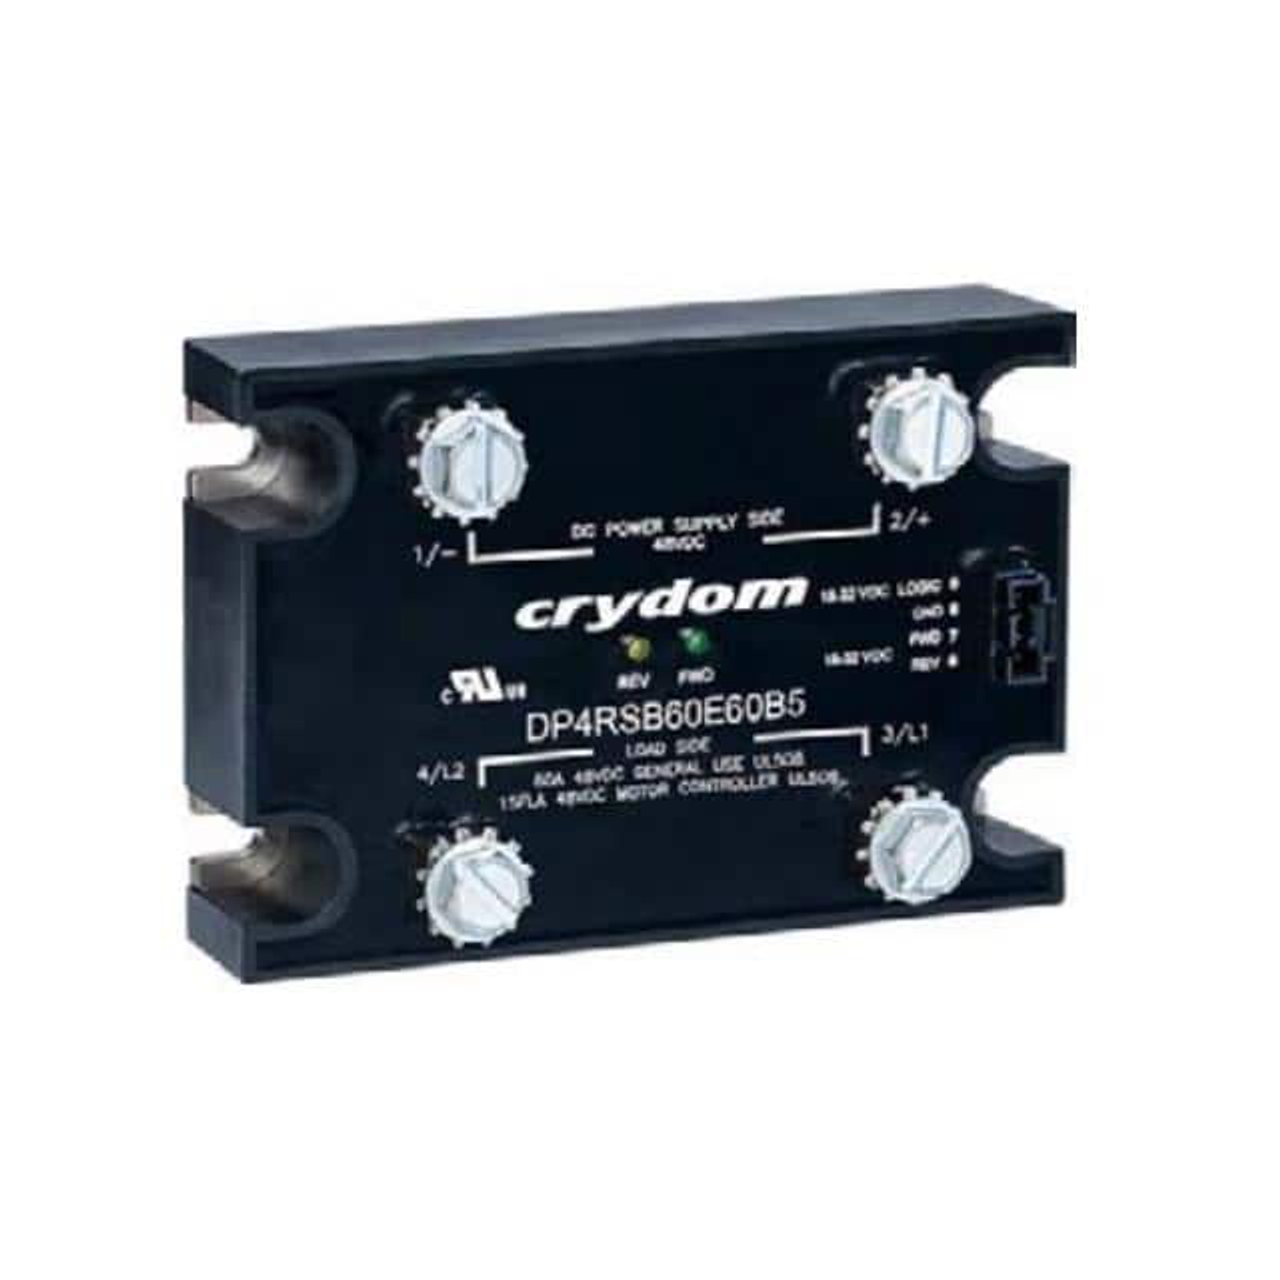 Sensata Technologies/Crydom DP4RSB60D20 Solid State Contactors